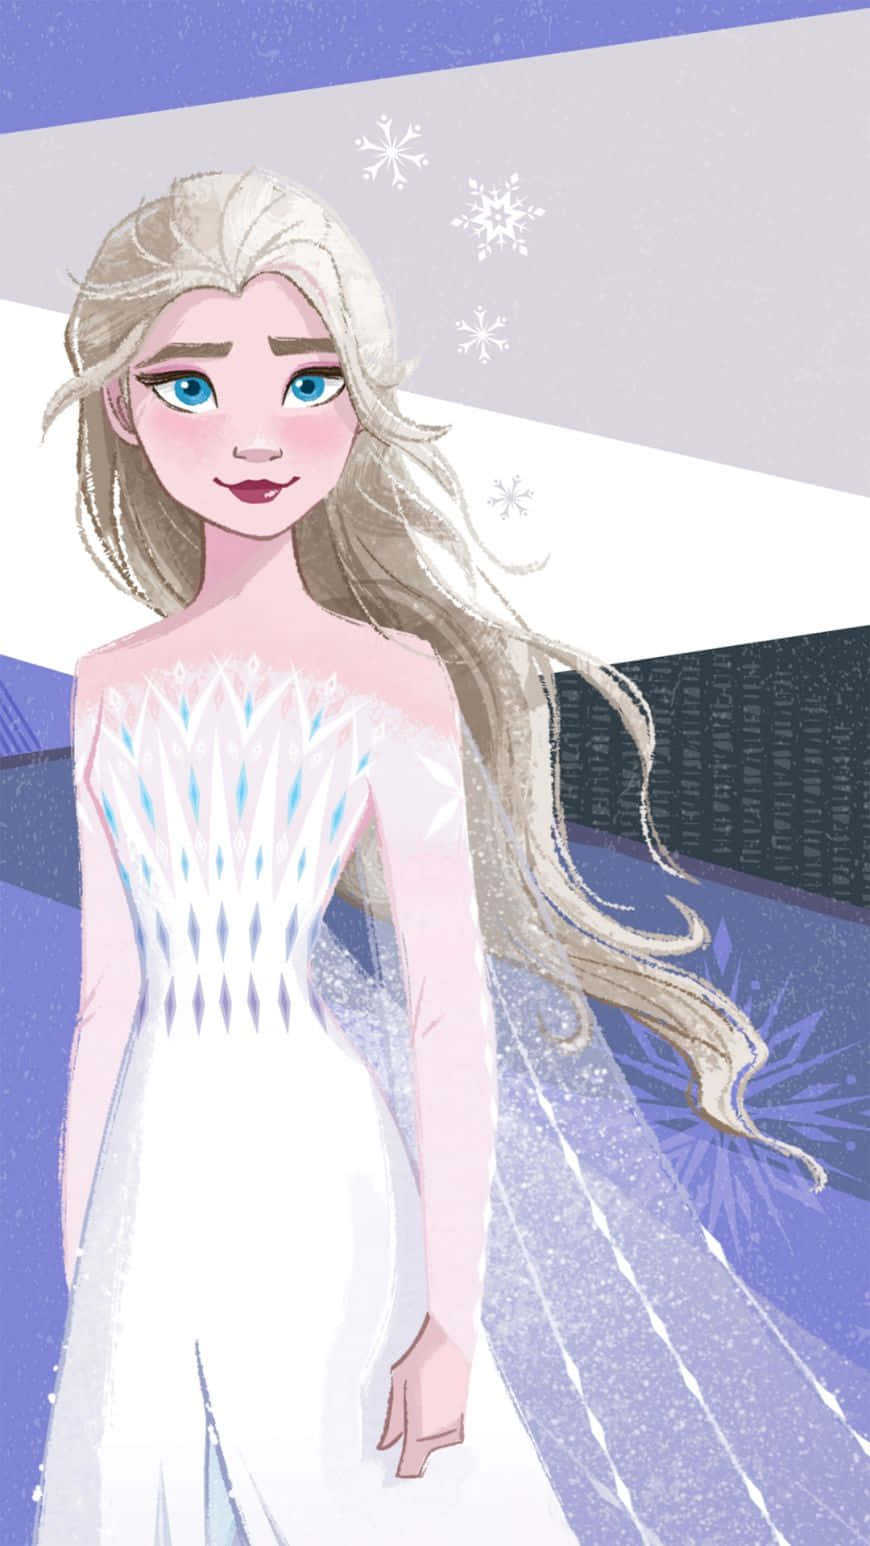 Omfavn kraften af vinteren og følg i Dronning Elsas fodspor med dette smukke hvide kjole fra Frozen 2. Wallpaper